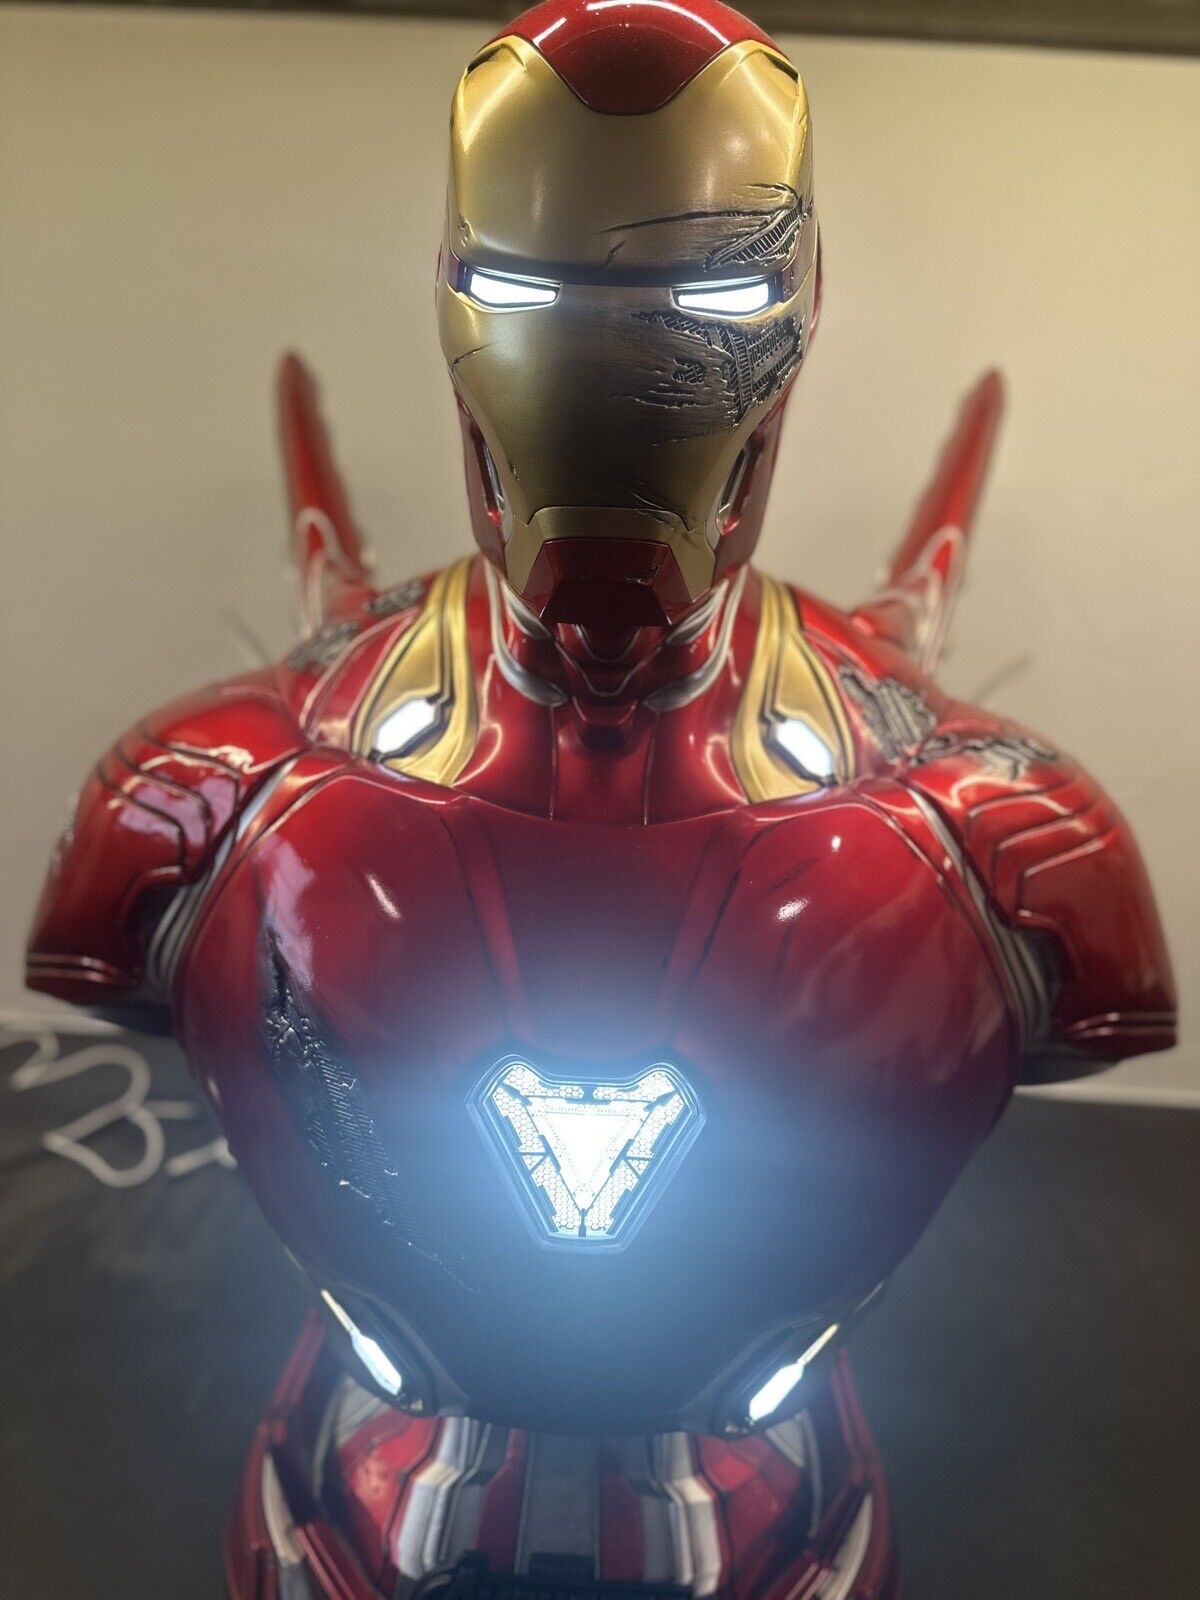 Queen Studios 1:1 Life Size MK50 Iron Man Battle Damaged Bust - MINT US Seller